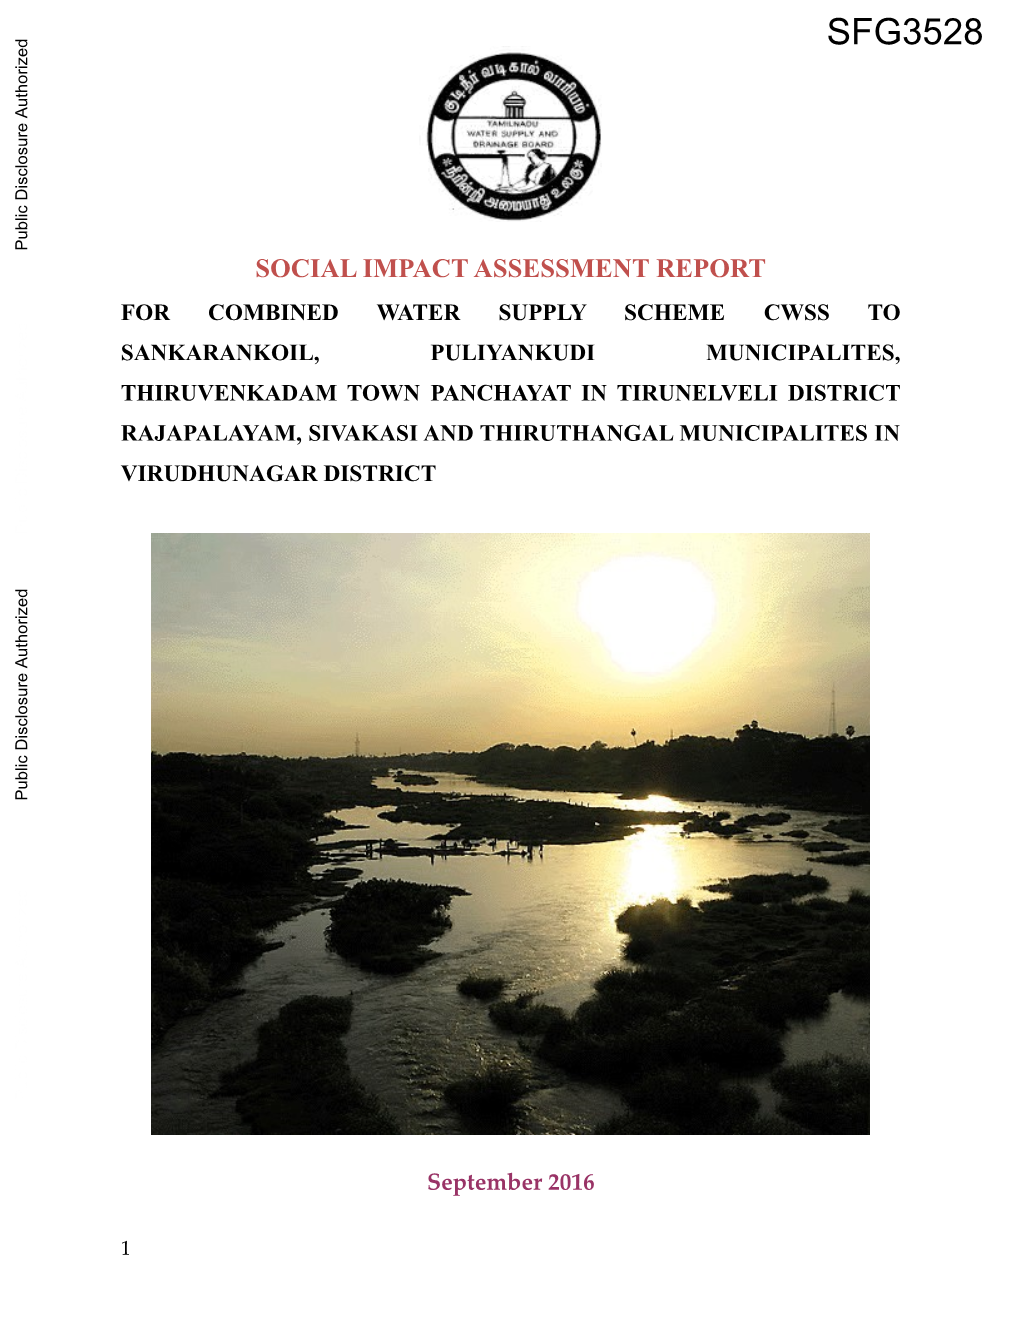 Social Impact Assessment Report